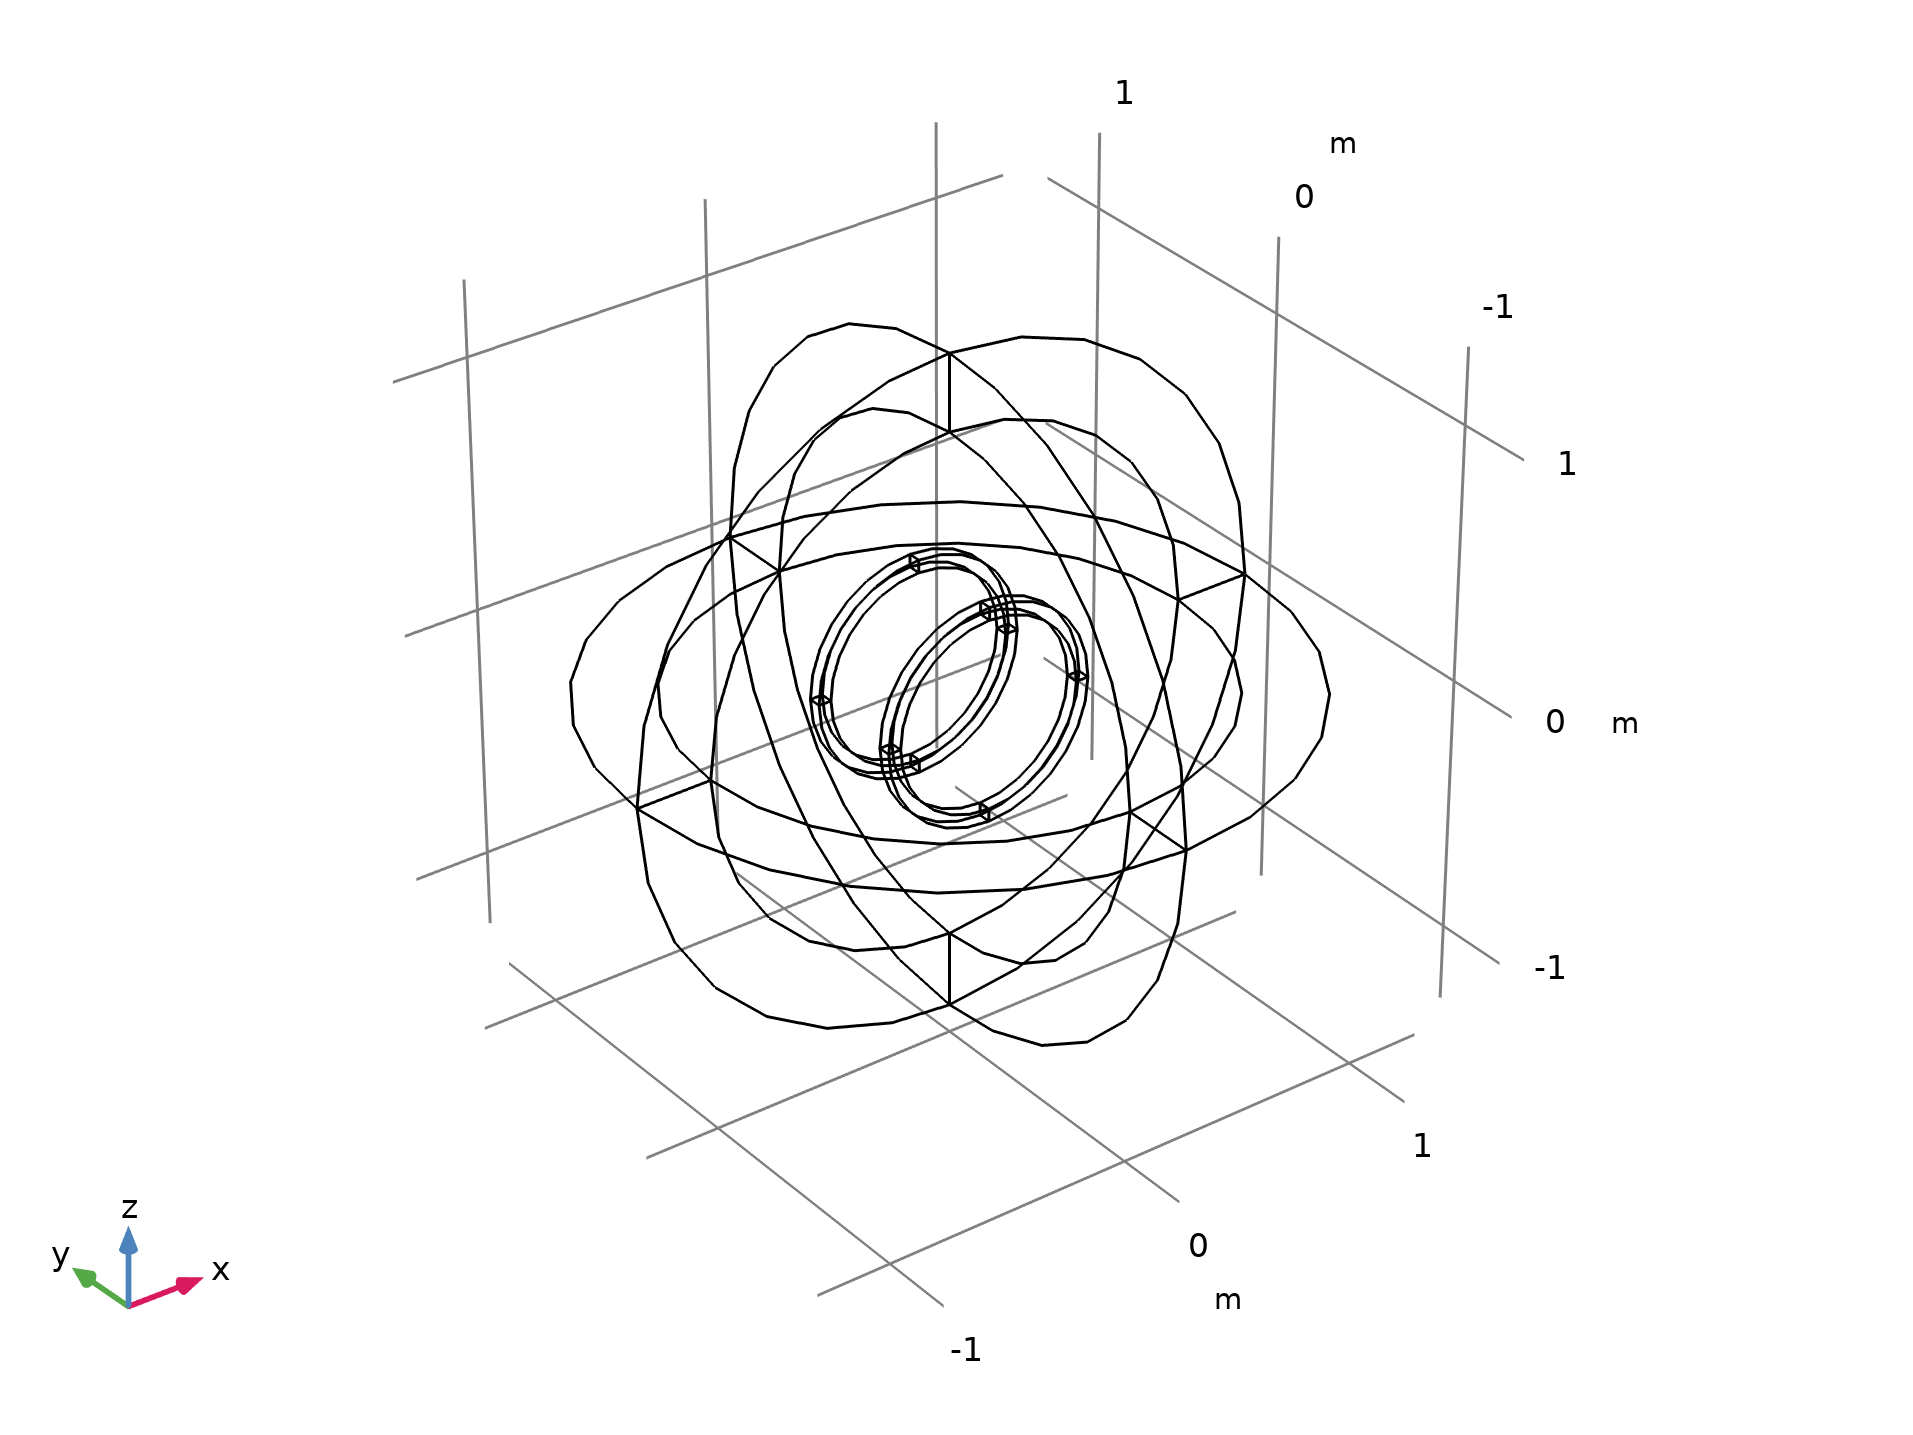 用于计算磁场空间导数的亥姆霍兹线圈模型的几何形状，外部区域被建模为一个无限元。